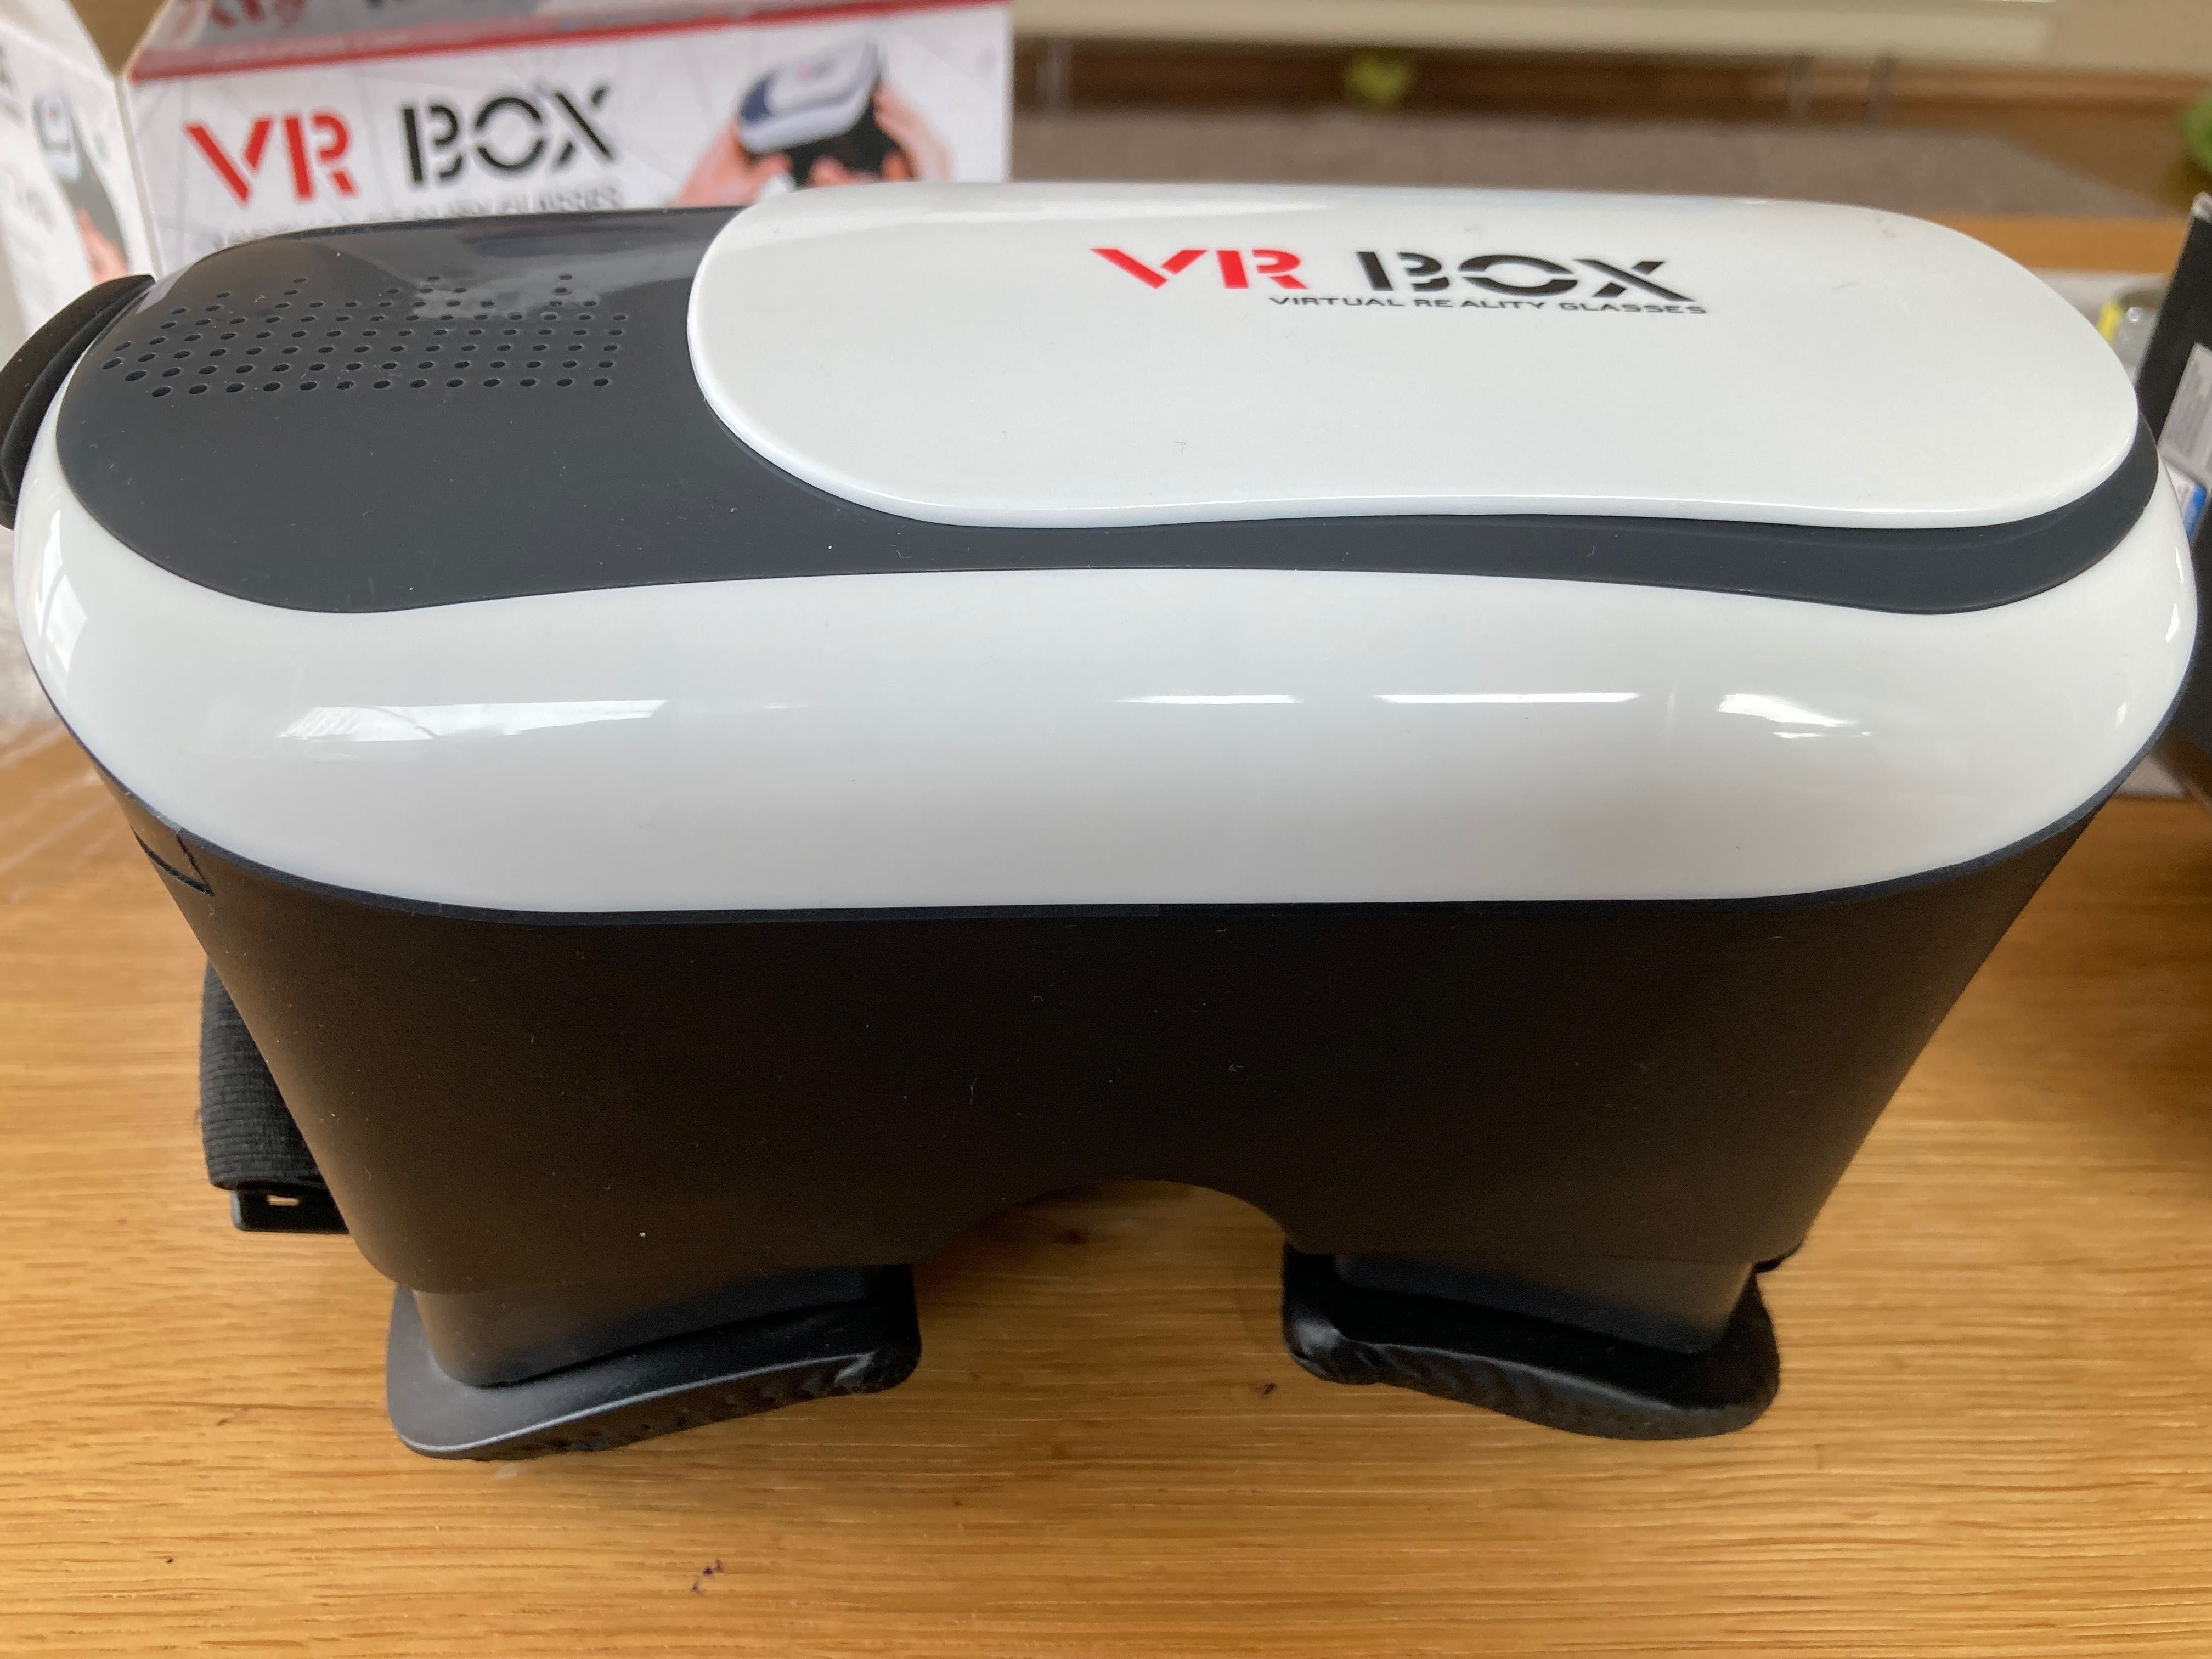 VR Box Wirtualne okulary 3 D